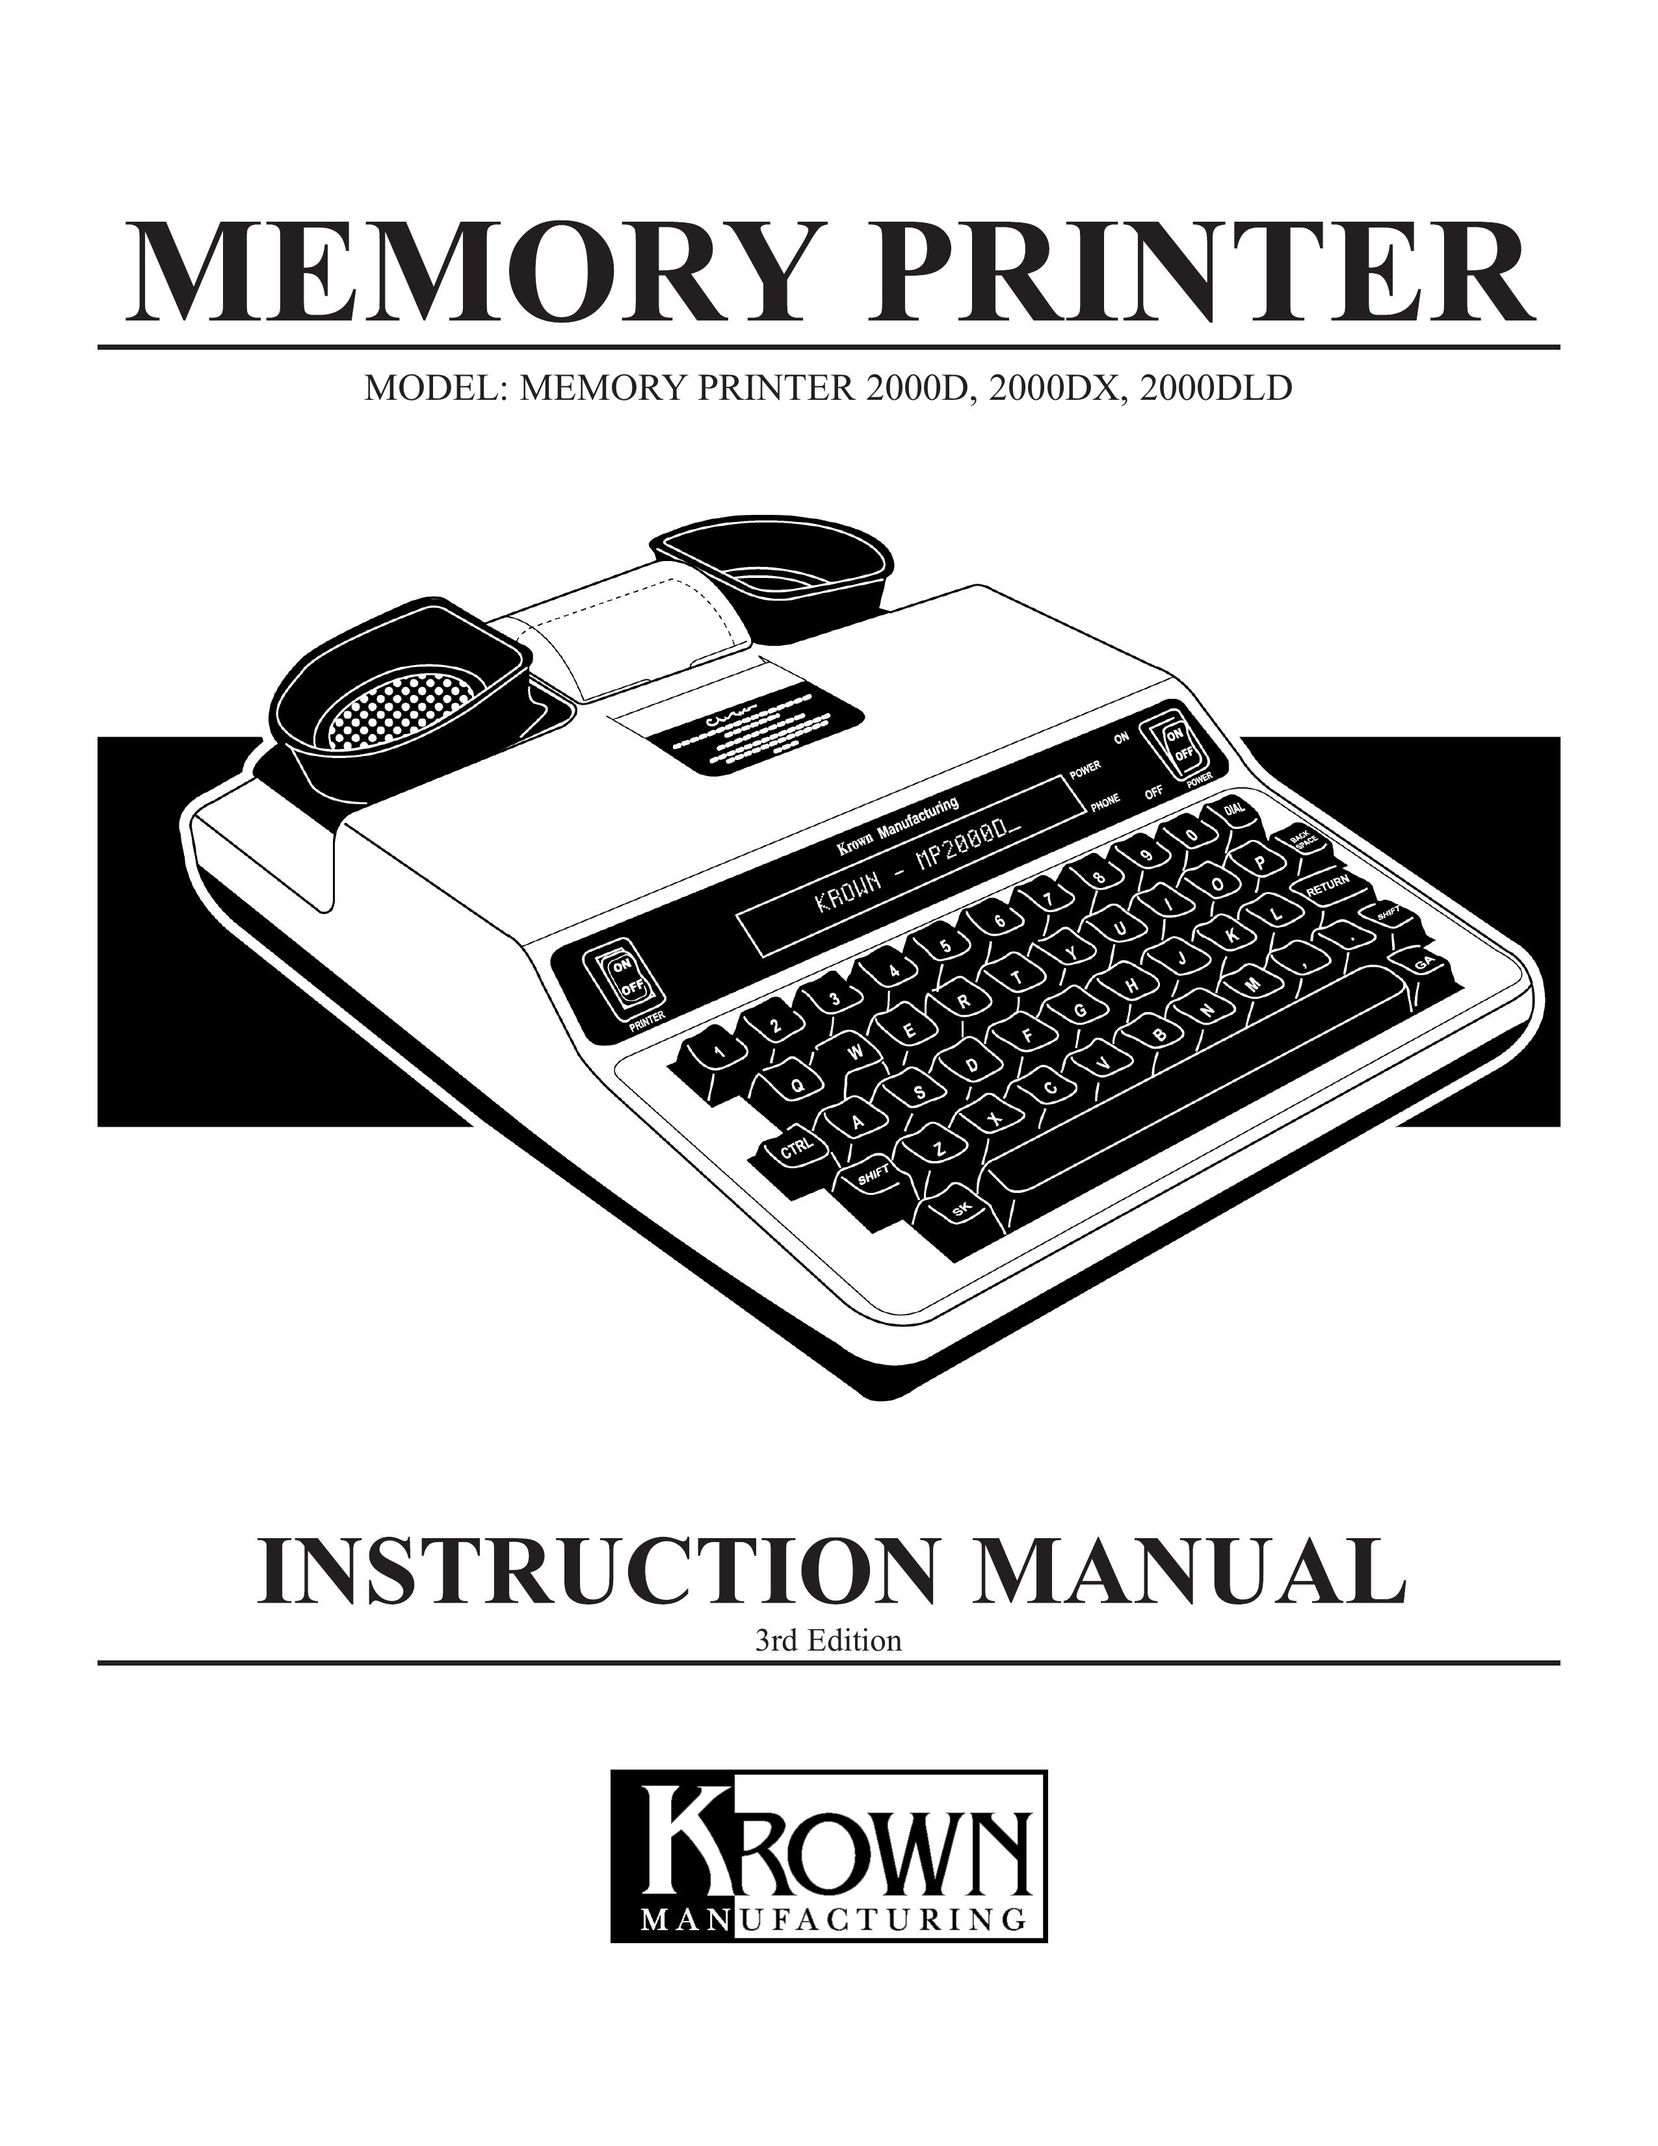 Krown Manufacturing 2000DX Printer User Manual